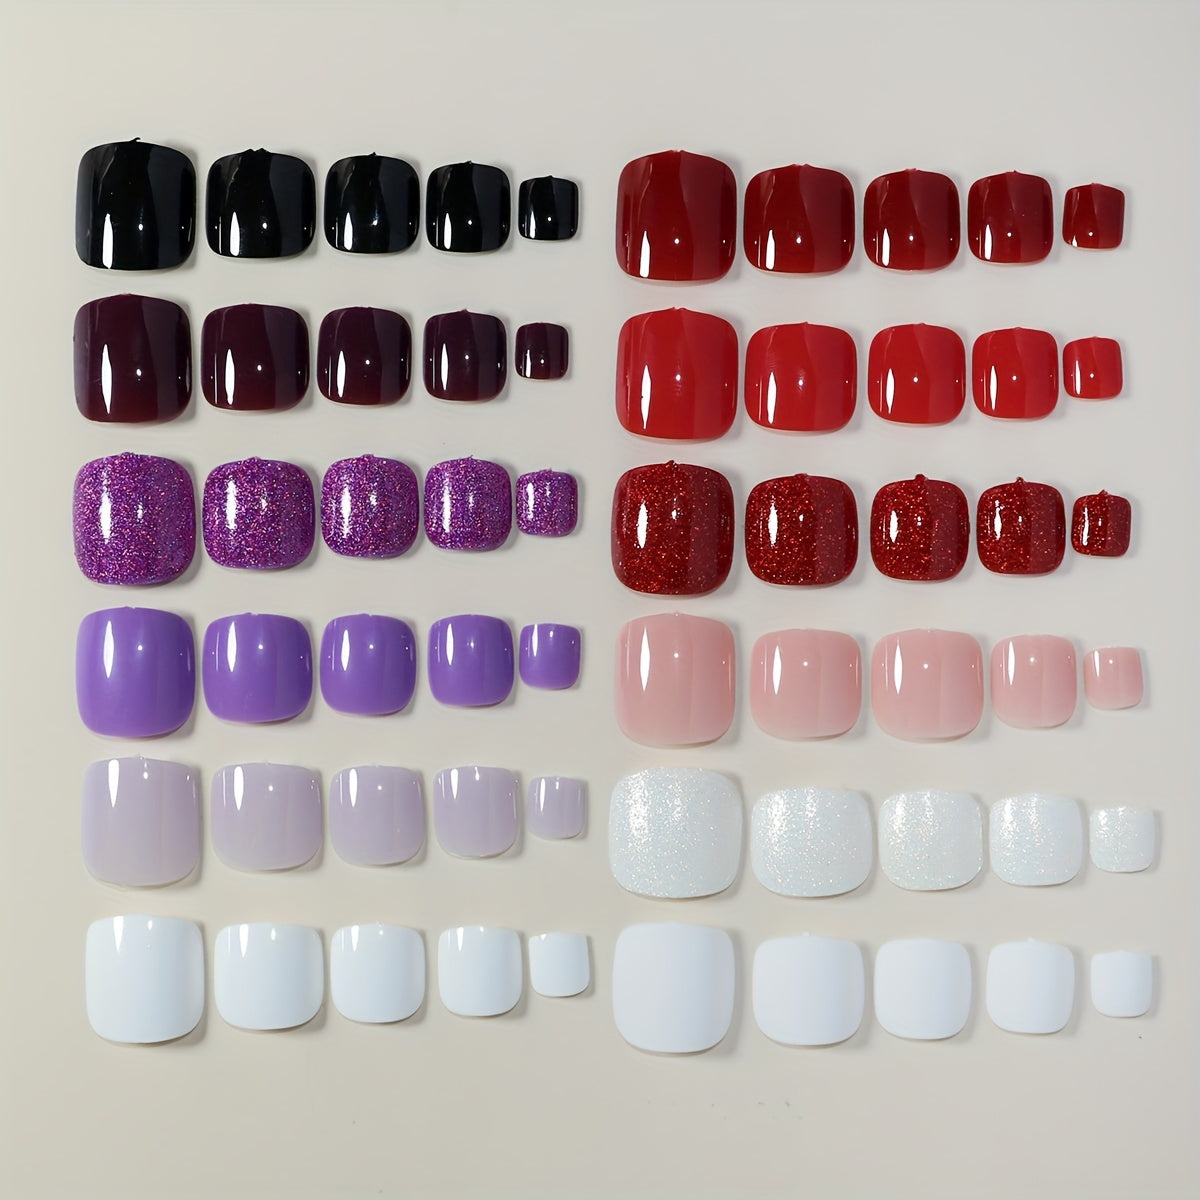 288pcs Short Square Press On Toenails, 12 Colors Glitter & Shiny Fake Toe Nail Art Set for Women & Girls